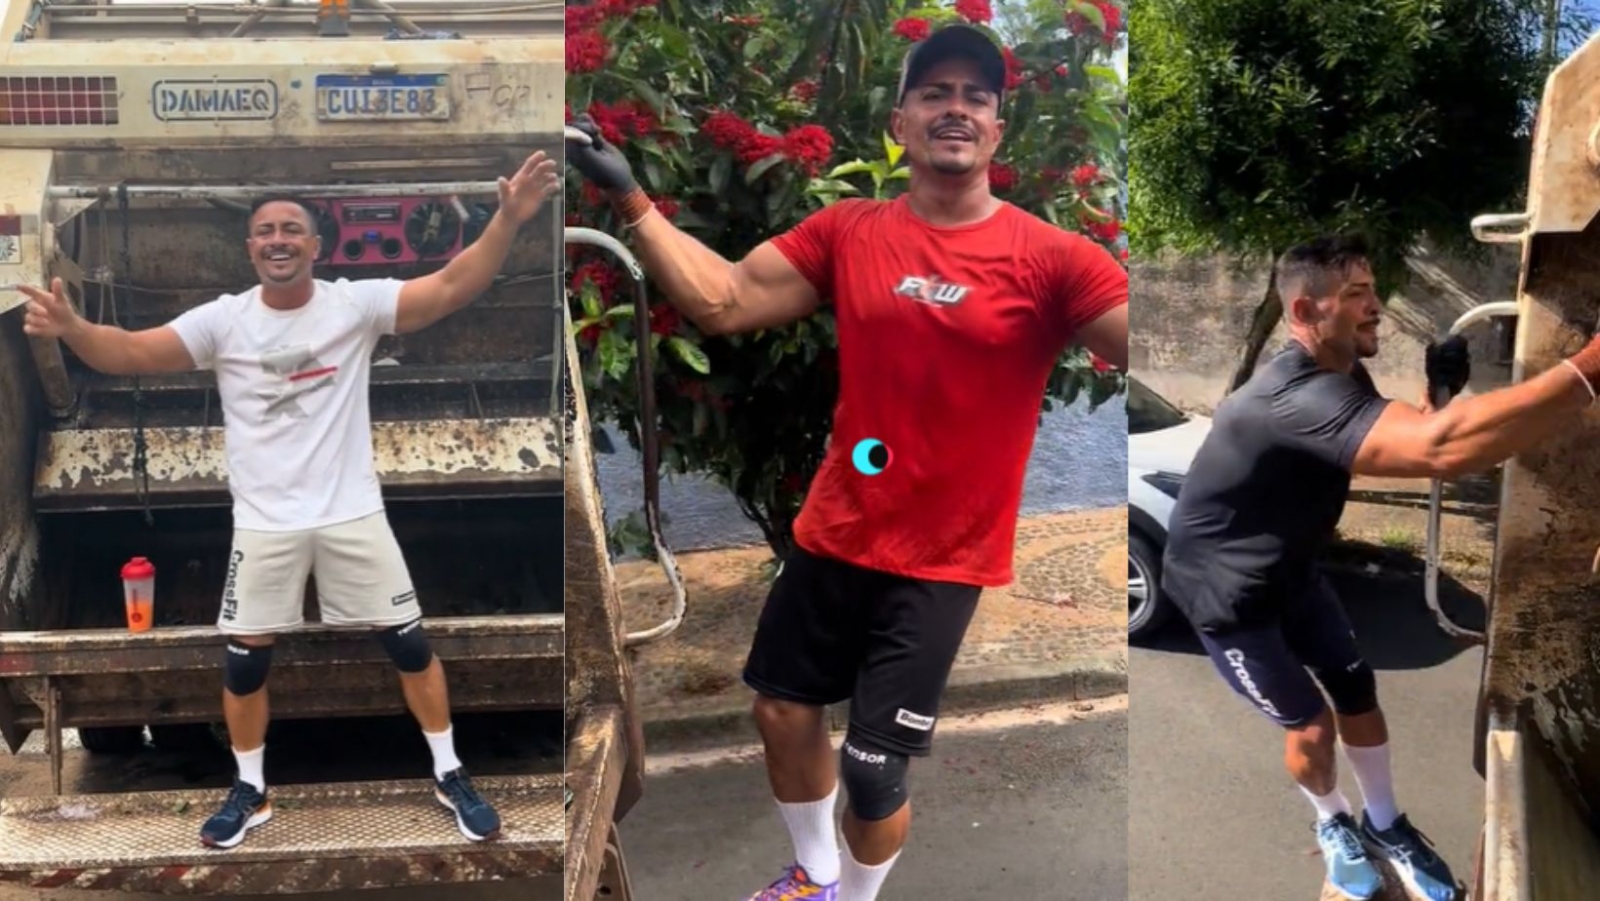 Recolector de basura se hace viral en TikTok por su cuerpo atlético: VIDEO